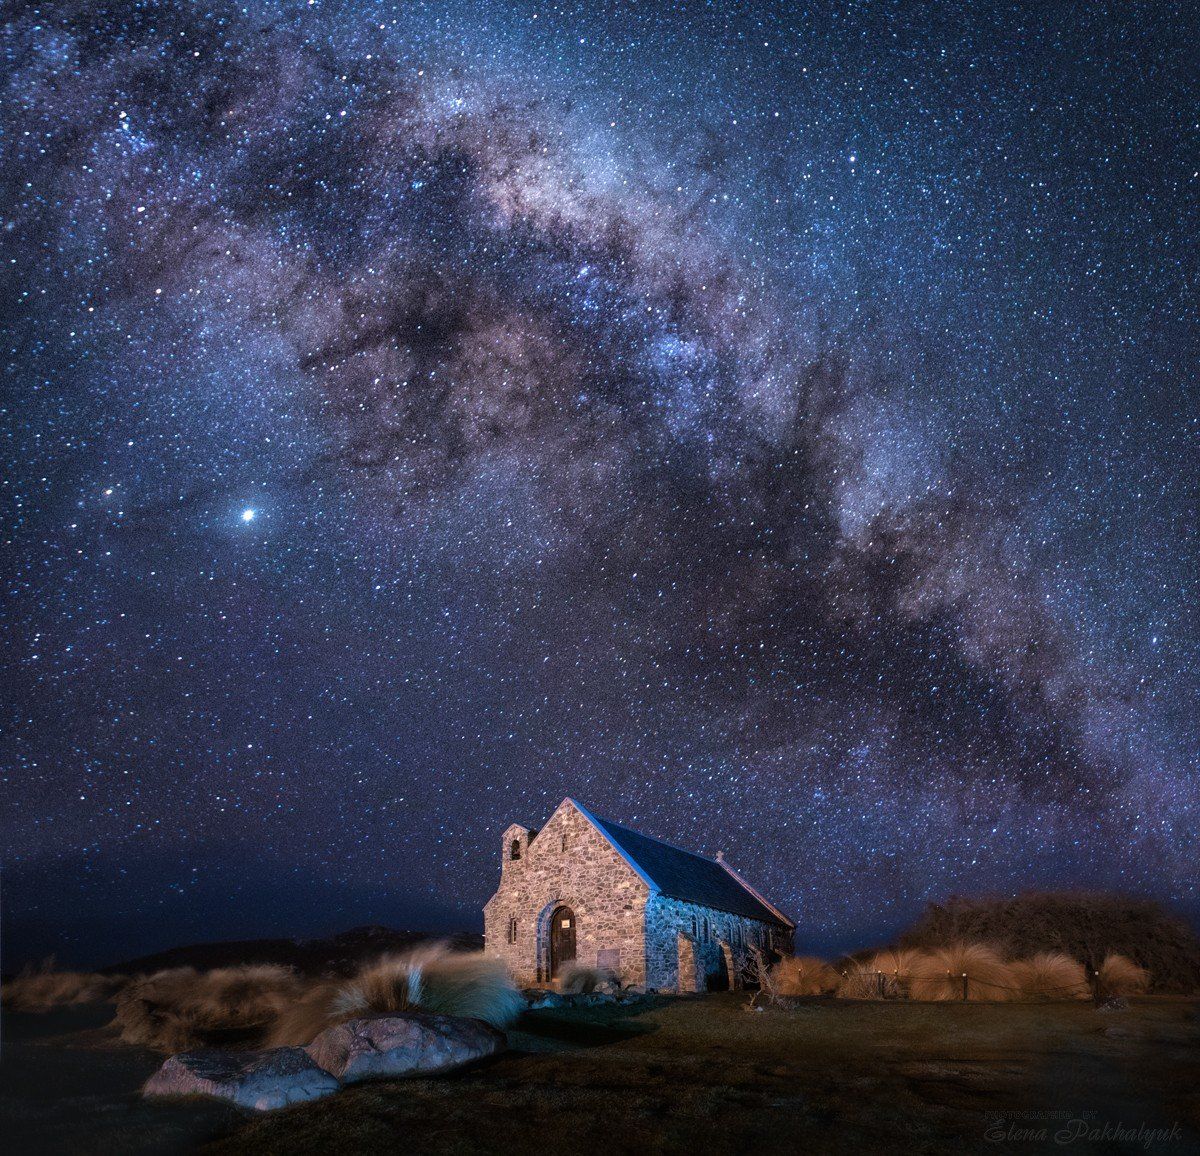 новая зеландия,пейзаж,млечный путь,звезды,ночь, ночной пейзаж,церковь,фототур, Elena Pakhalyuk